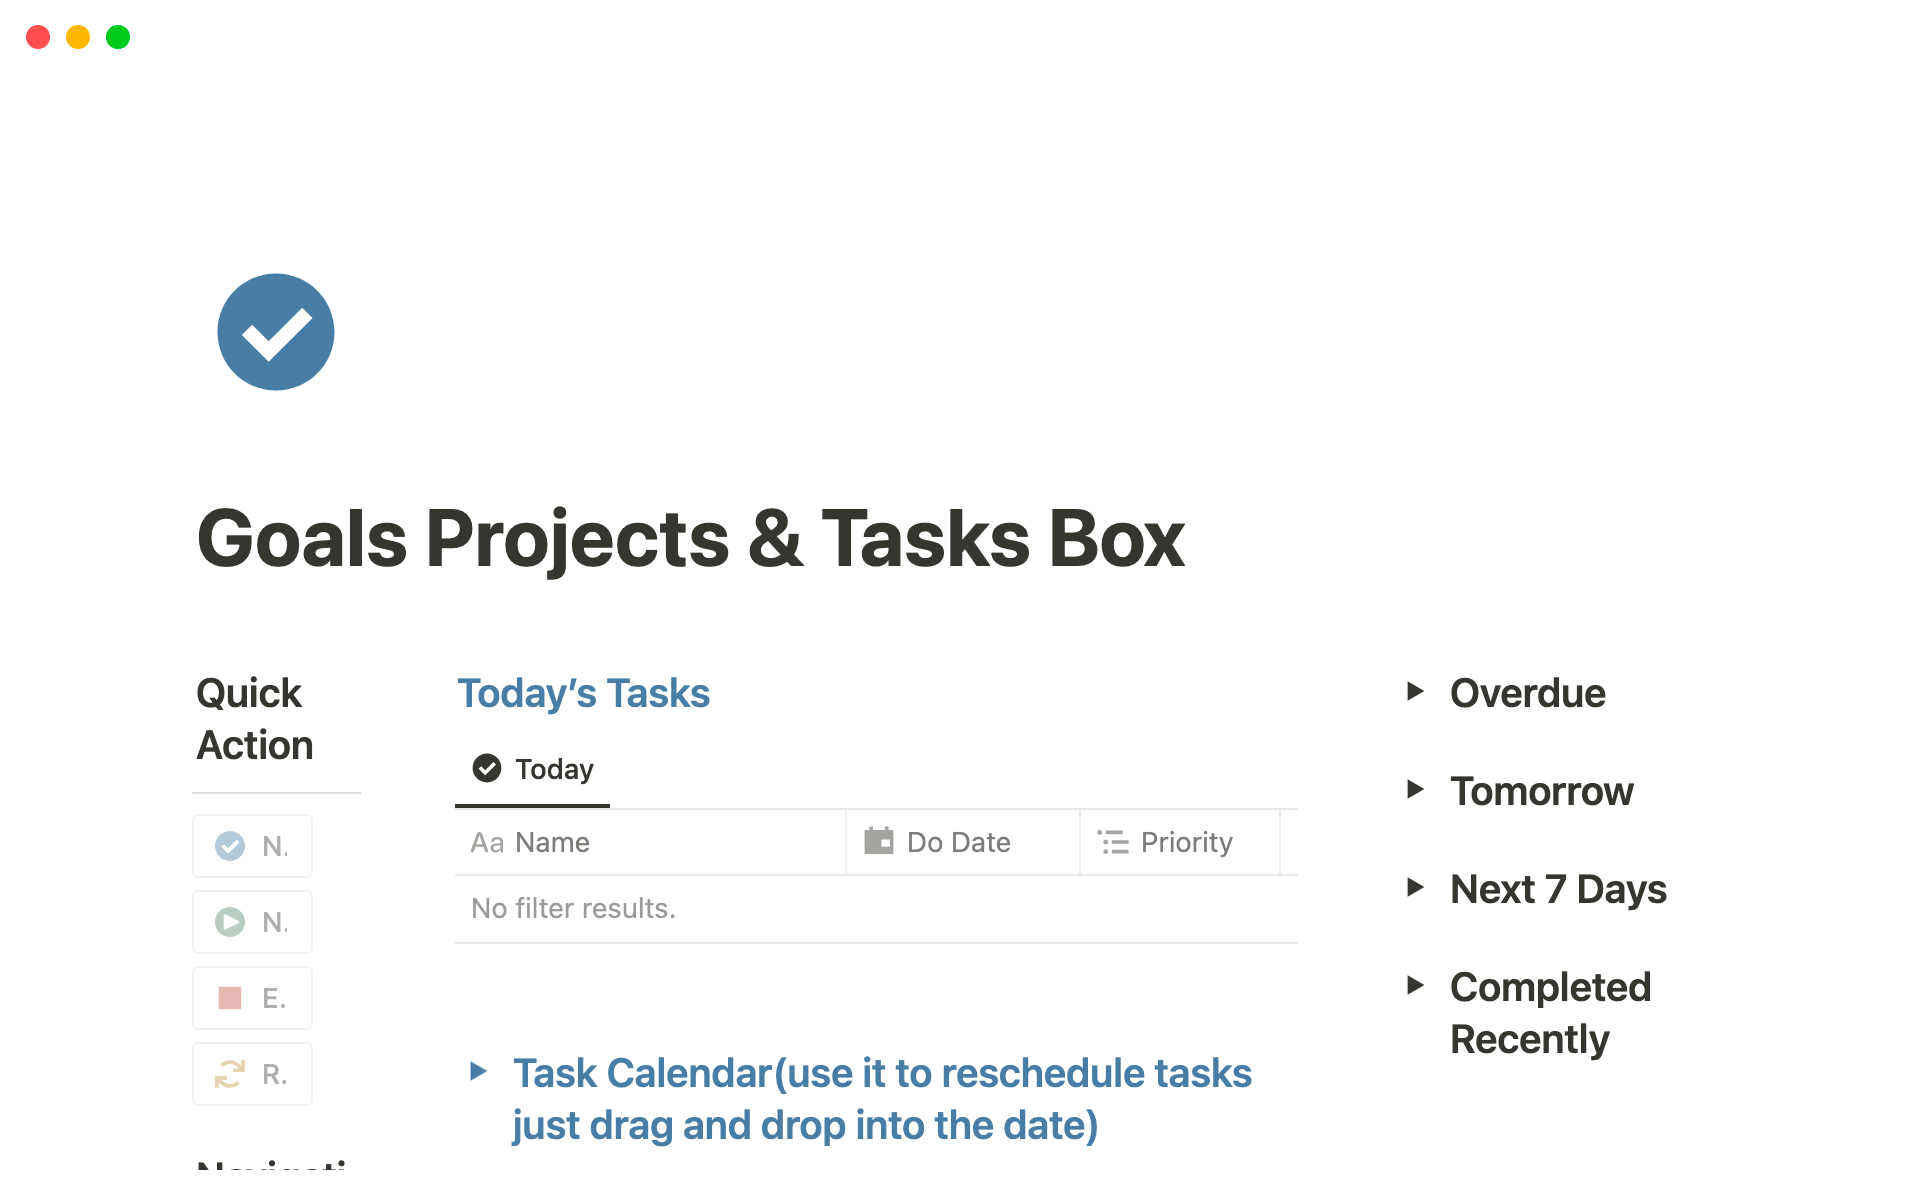 Goals projects & Tasks Boxのテンプレートのプレビュー